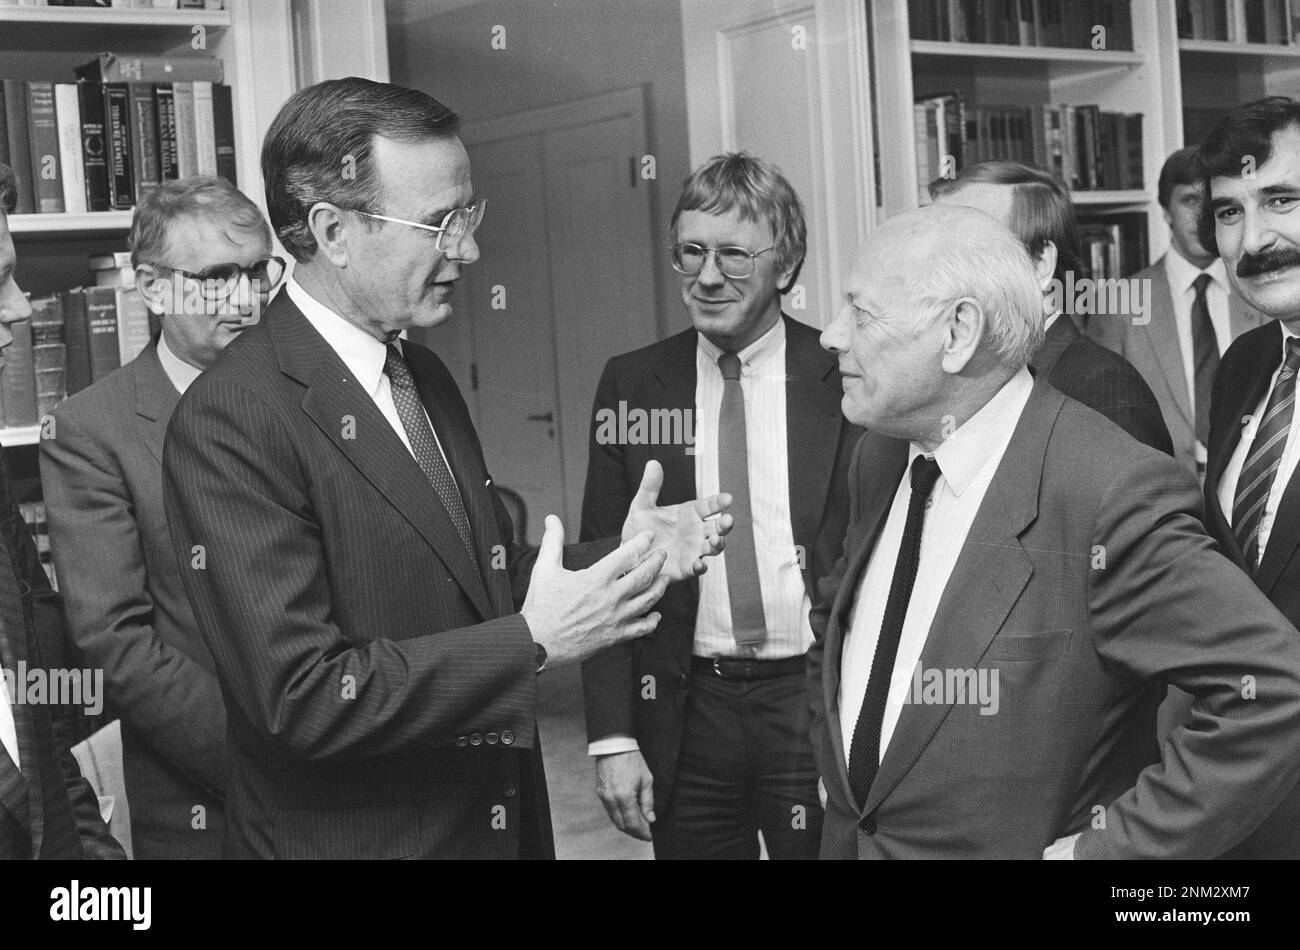 Besuch des US-Vizepräsidenten George Bush; Gespräch mit der Opposition Bush im Gespräch mit Den Uyl , Stemerdink (PvdA) (m), Meyer, (l) Van de Berg (PvdA) (r) Ca. 1985 Stockfoto